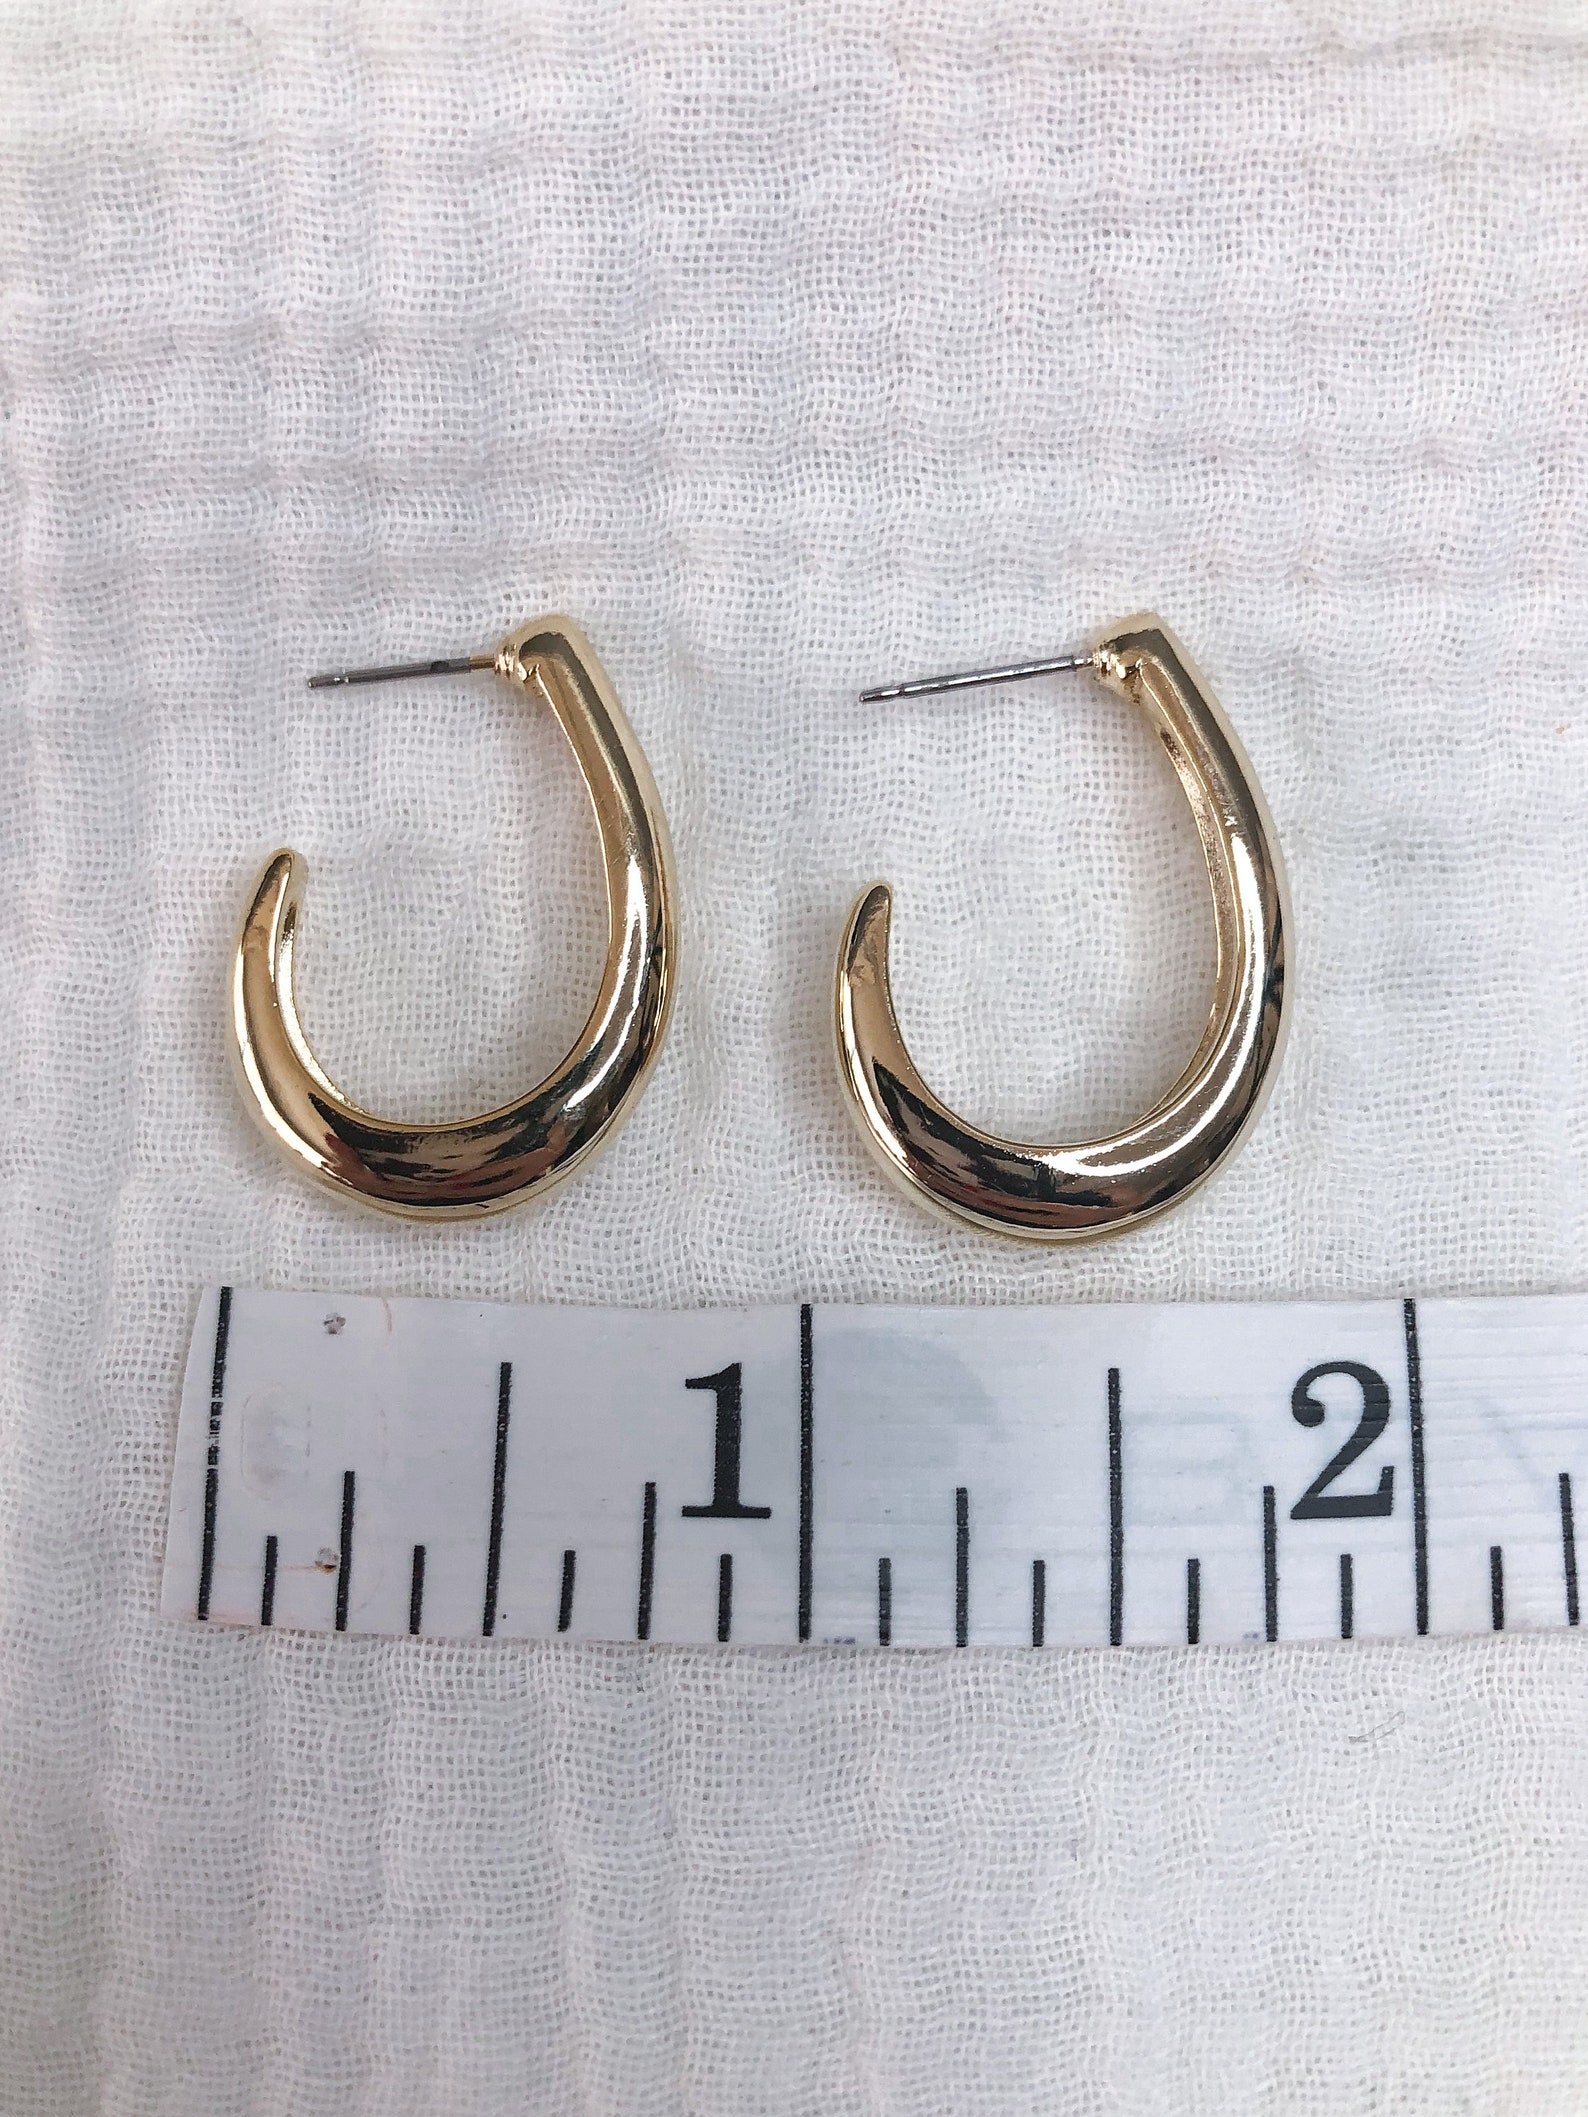 Gold Half Hoop Earrings Small Hoop Earrings Minimal Hoop Earrings 14k ...